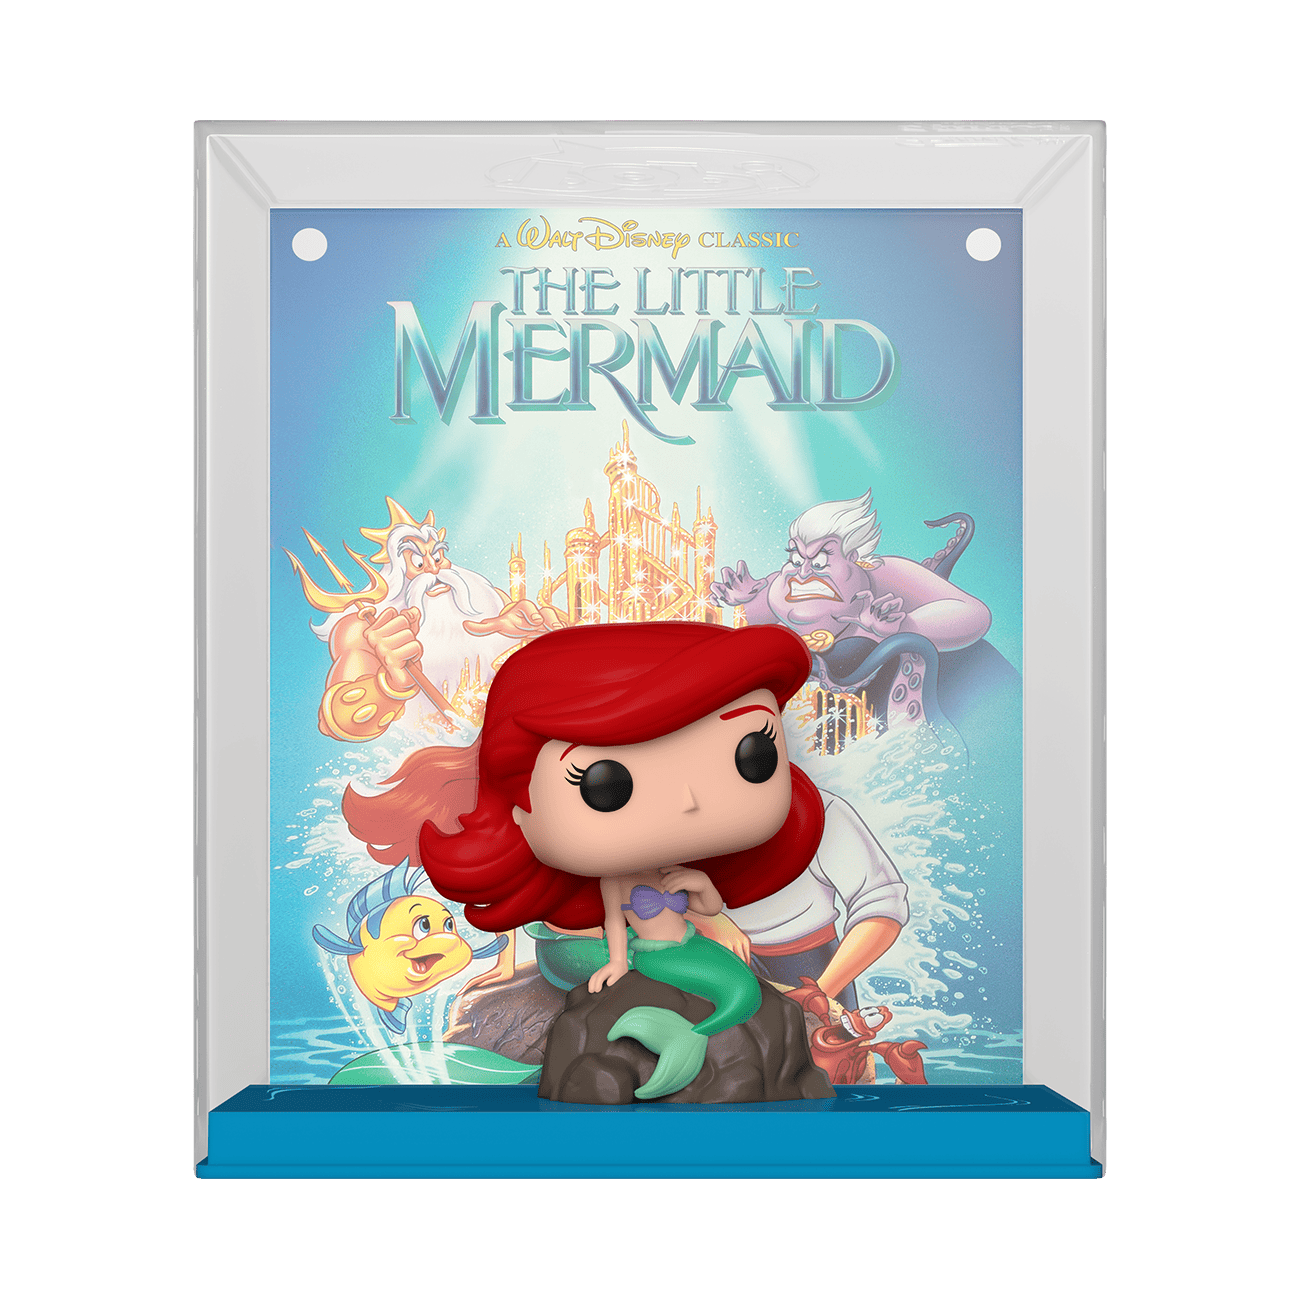 disney subliminal messages the little mermaid